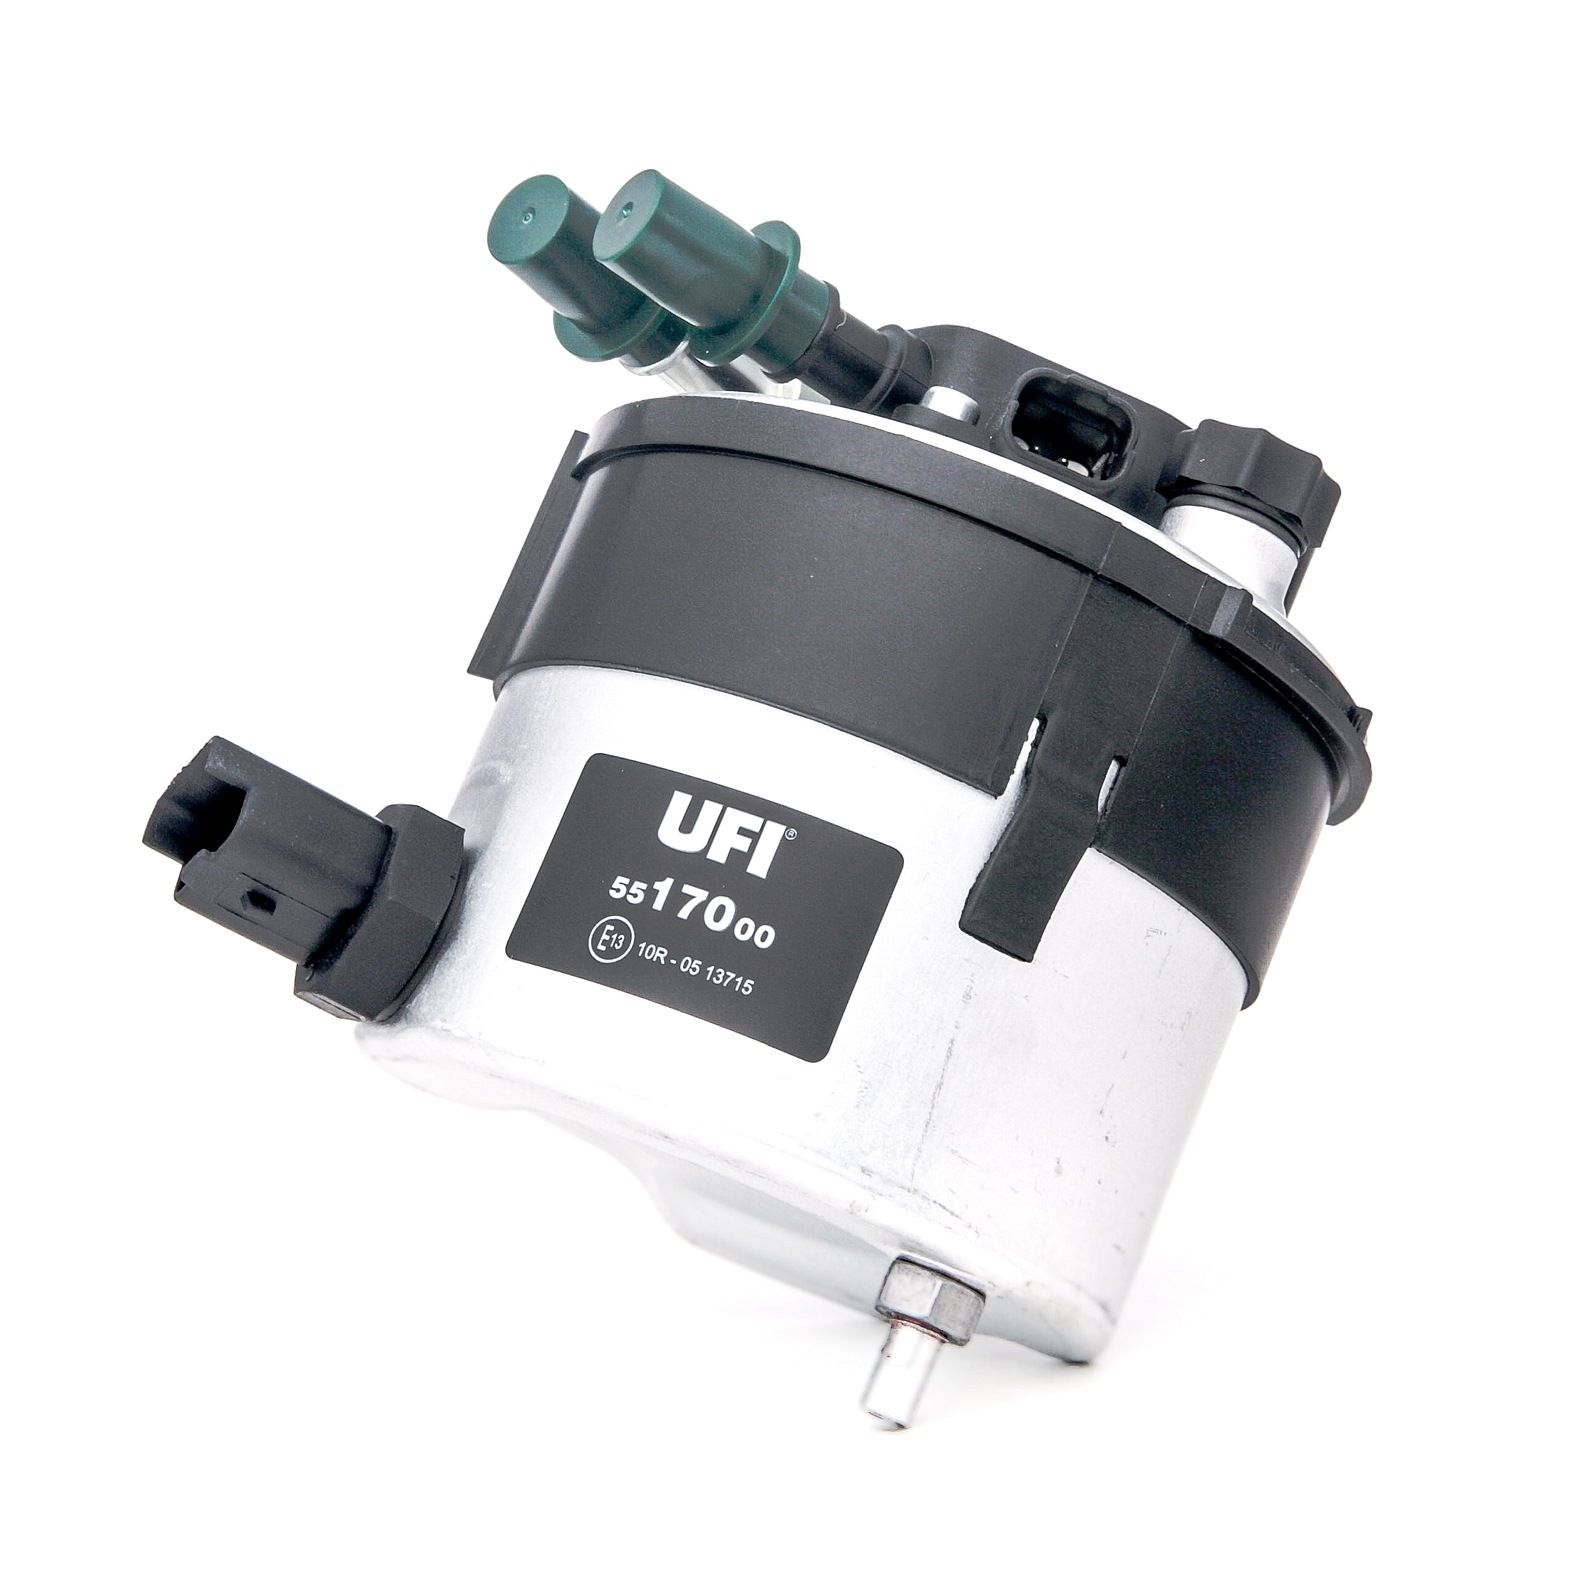 UFI 55.170.00 Filtri carburante Cartuccia filtro, 10mm, 10mm Volvo di qualità originale